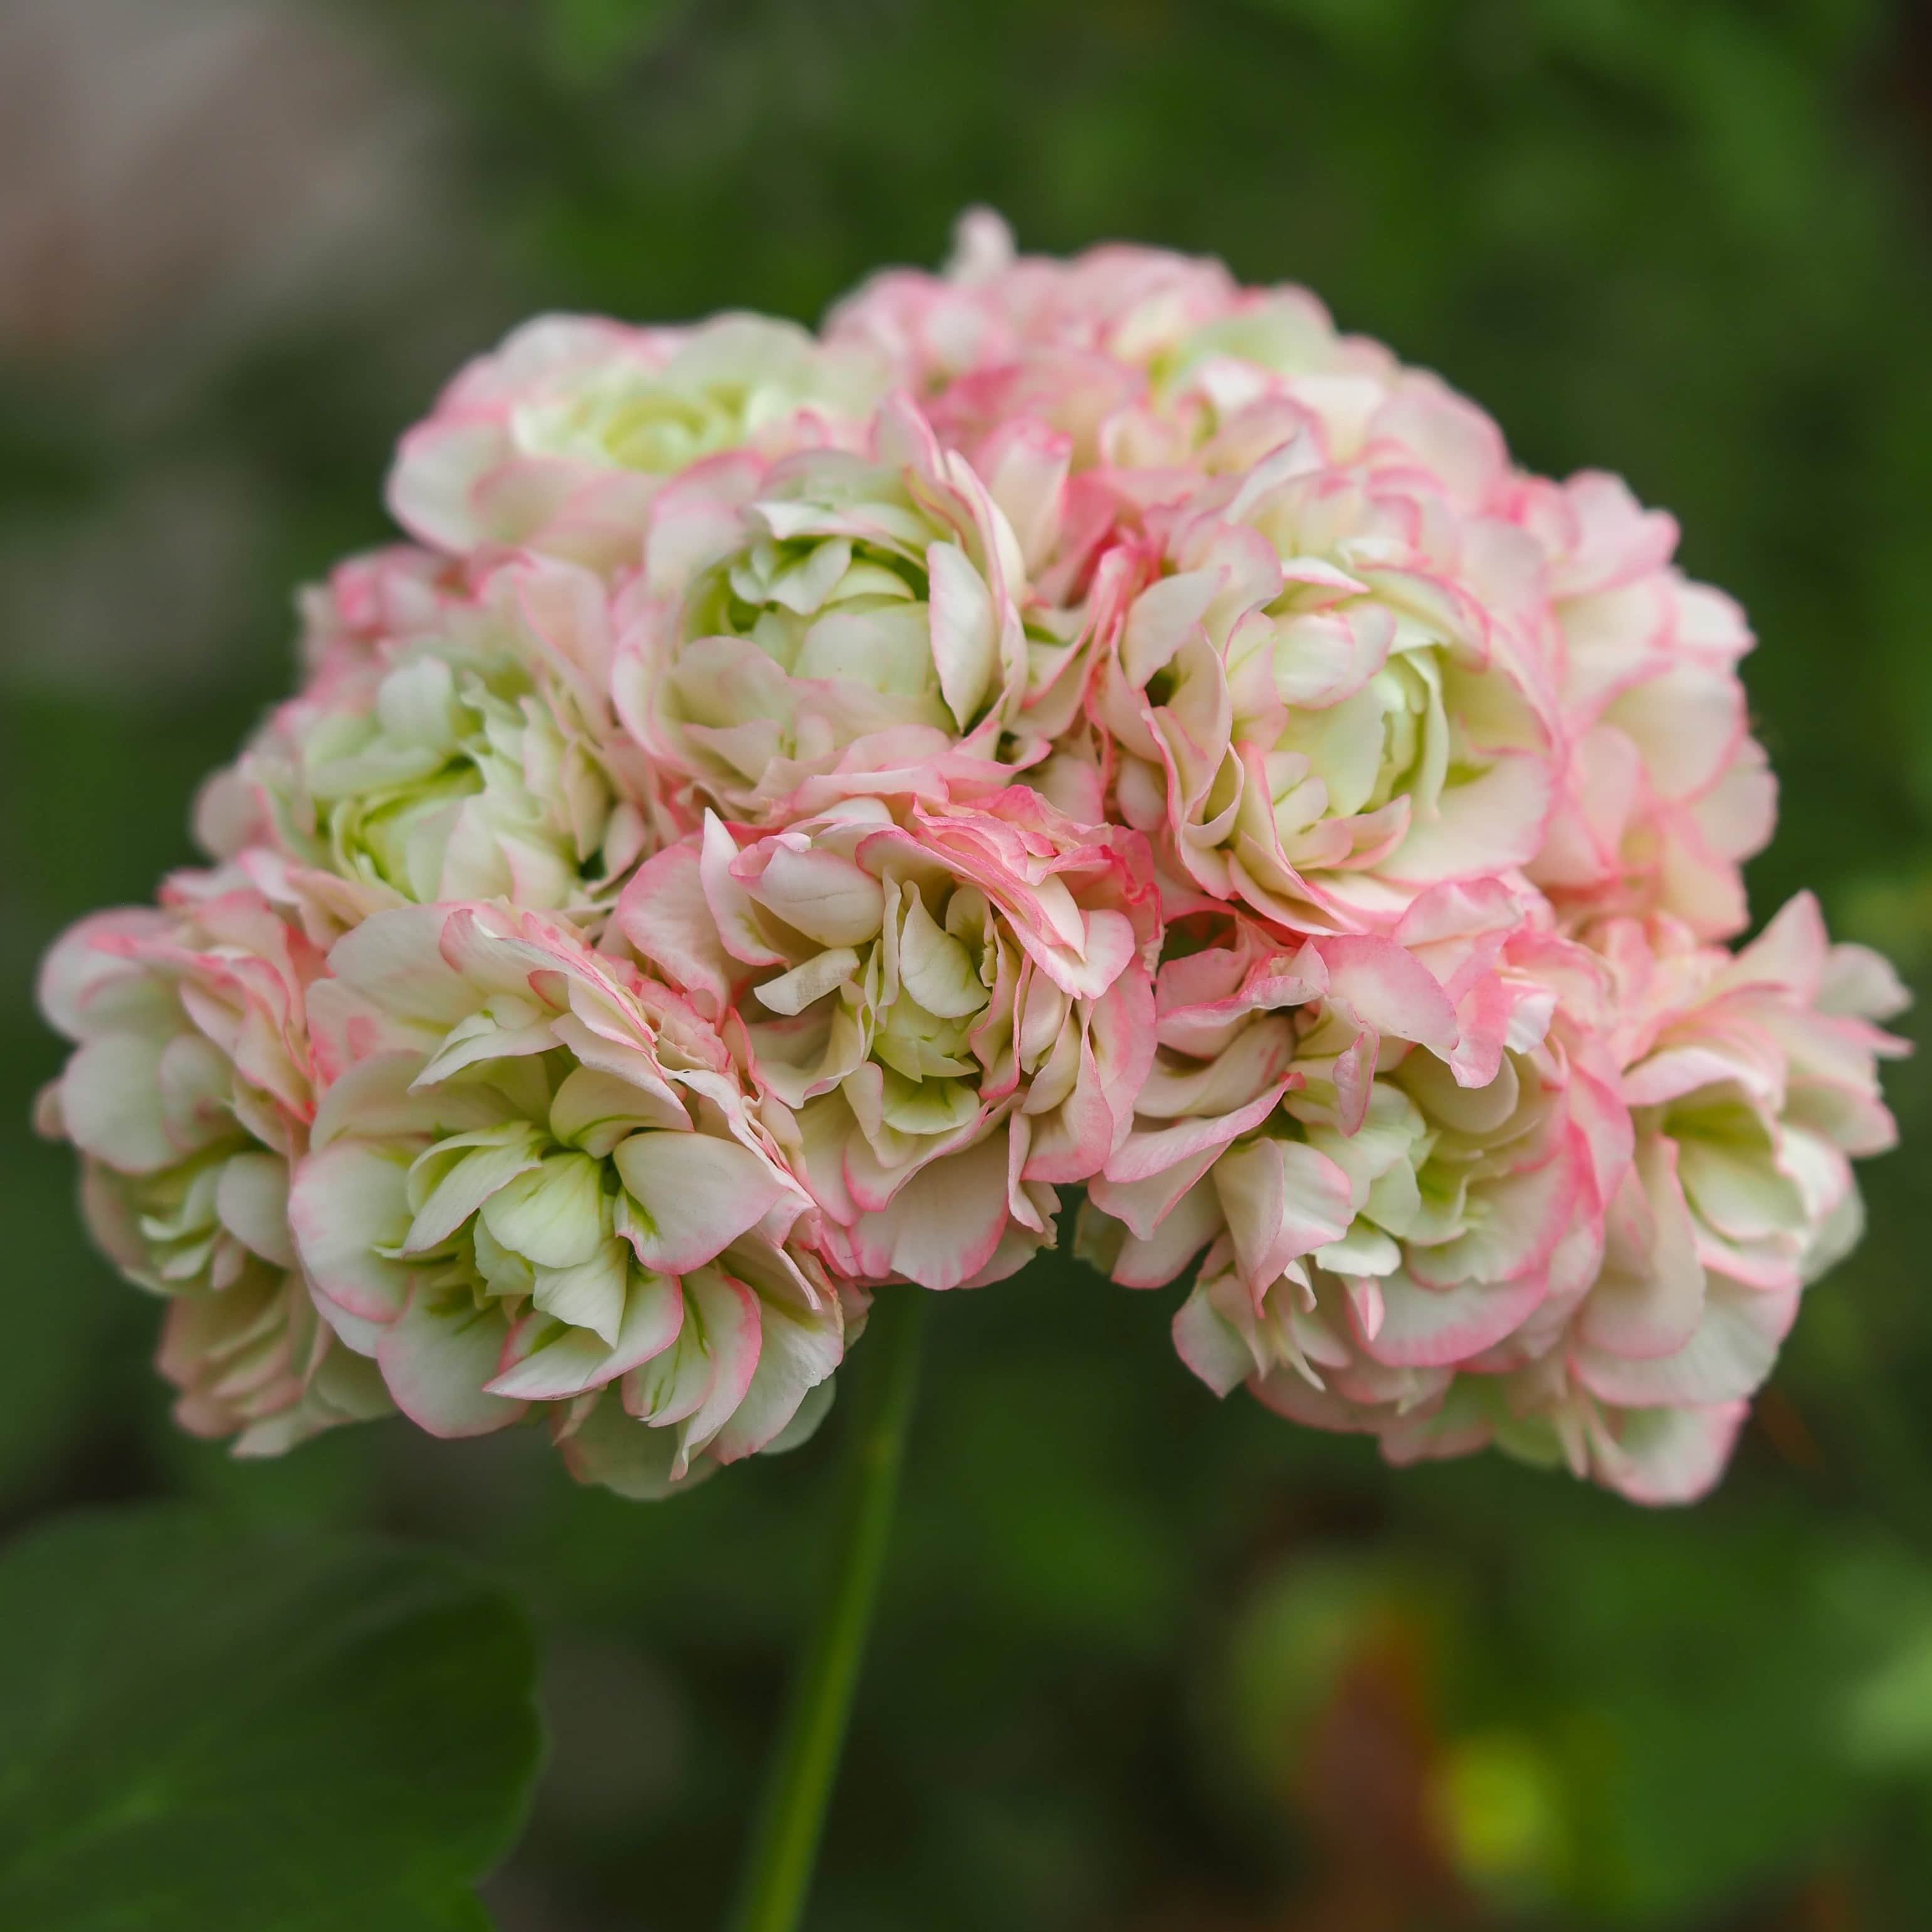 rosenknoppspelargon-appleblossom-3st-sticklin-1